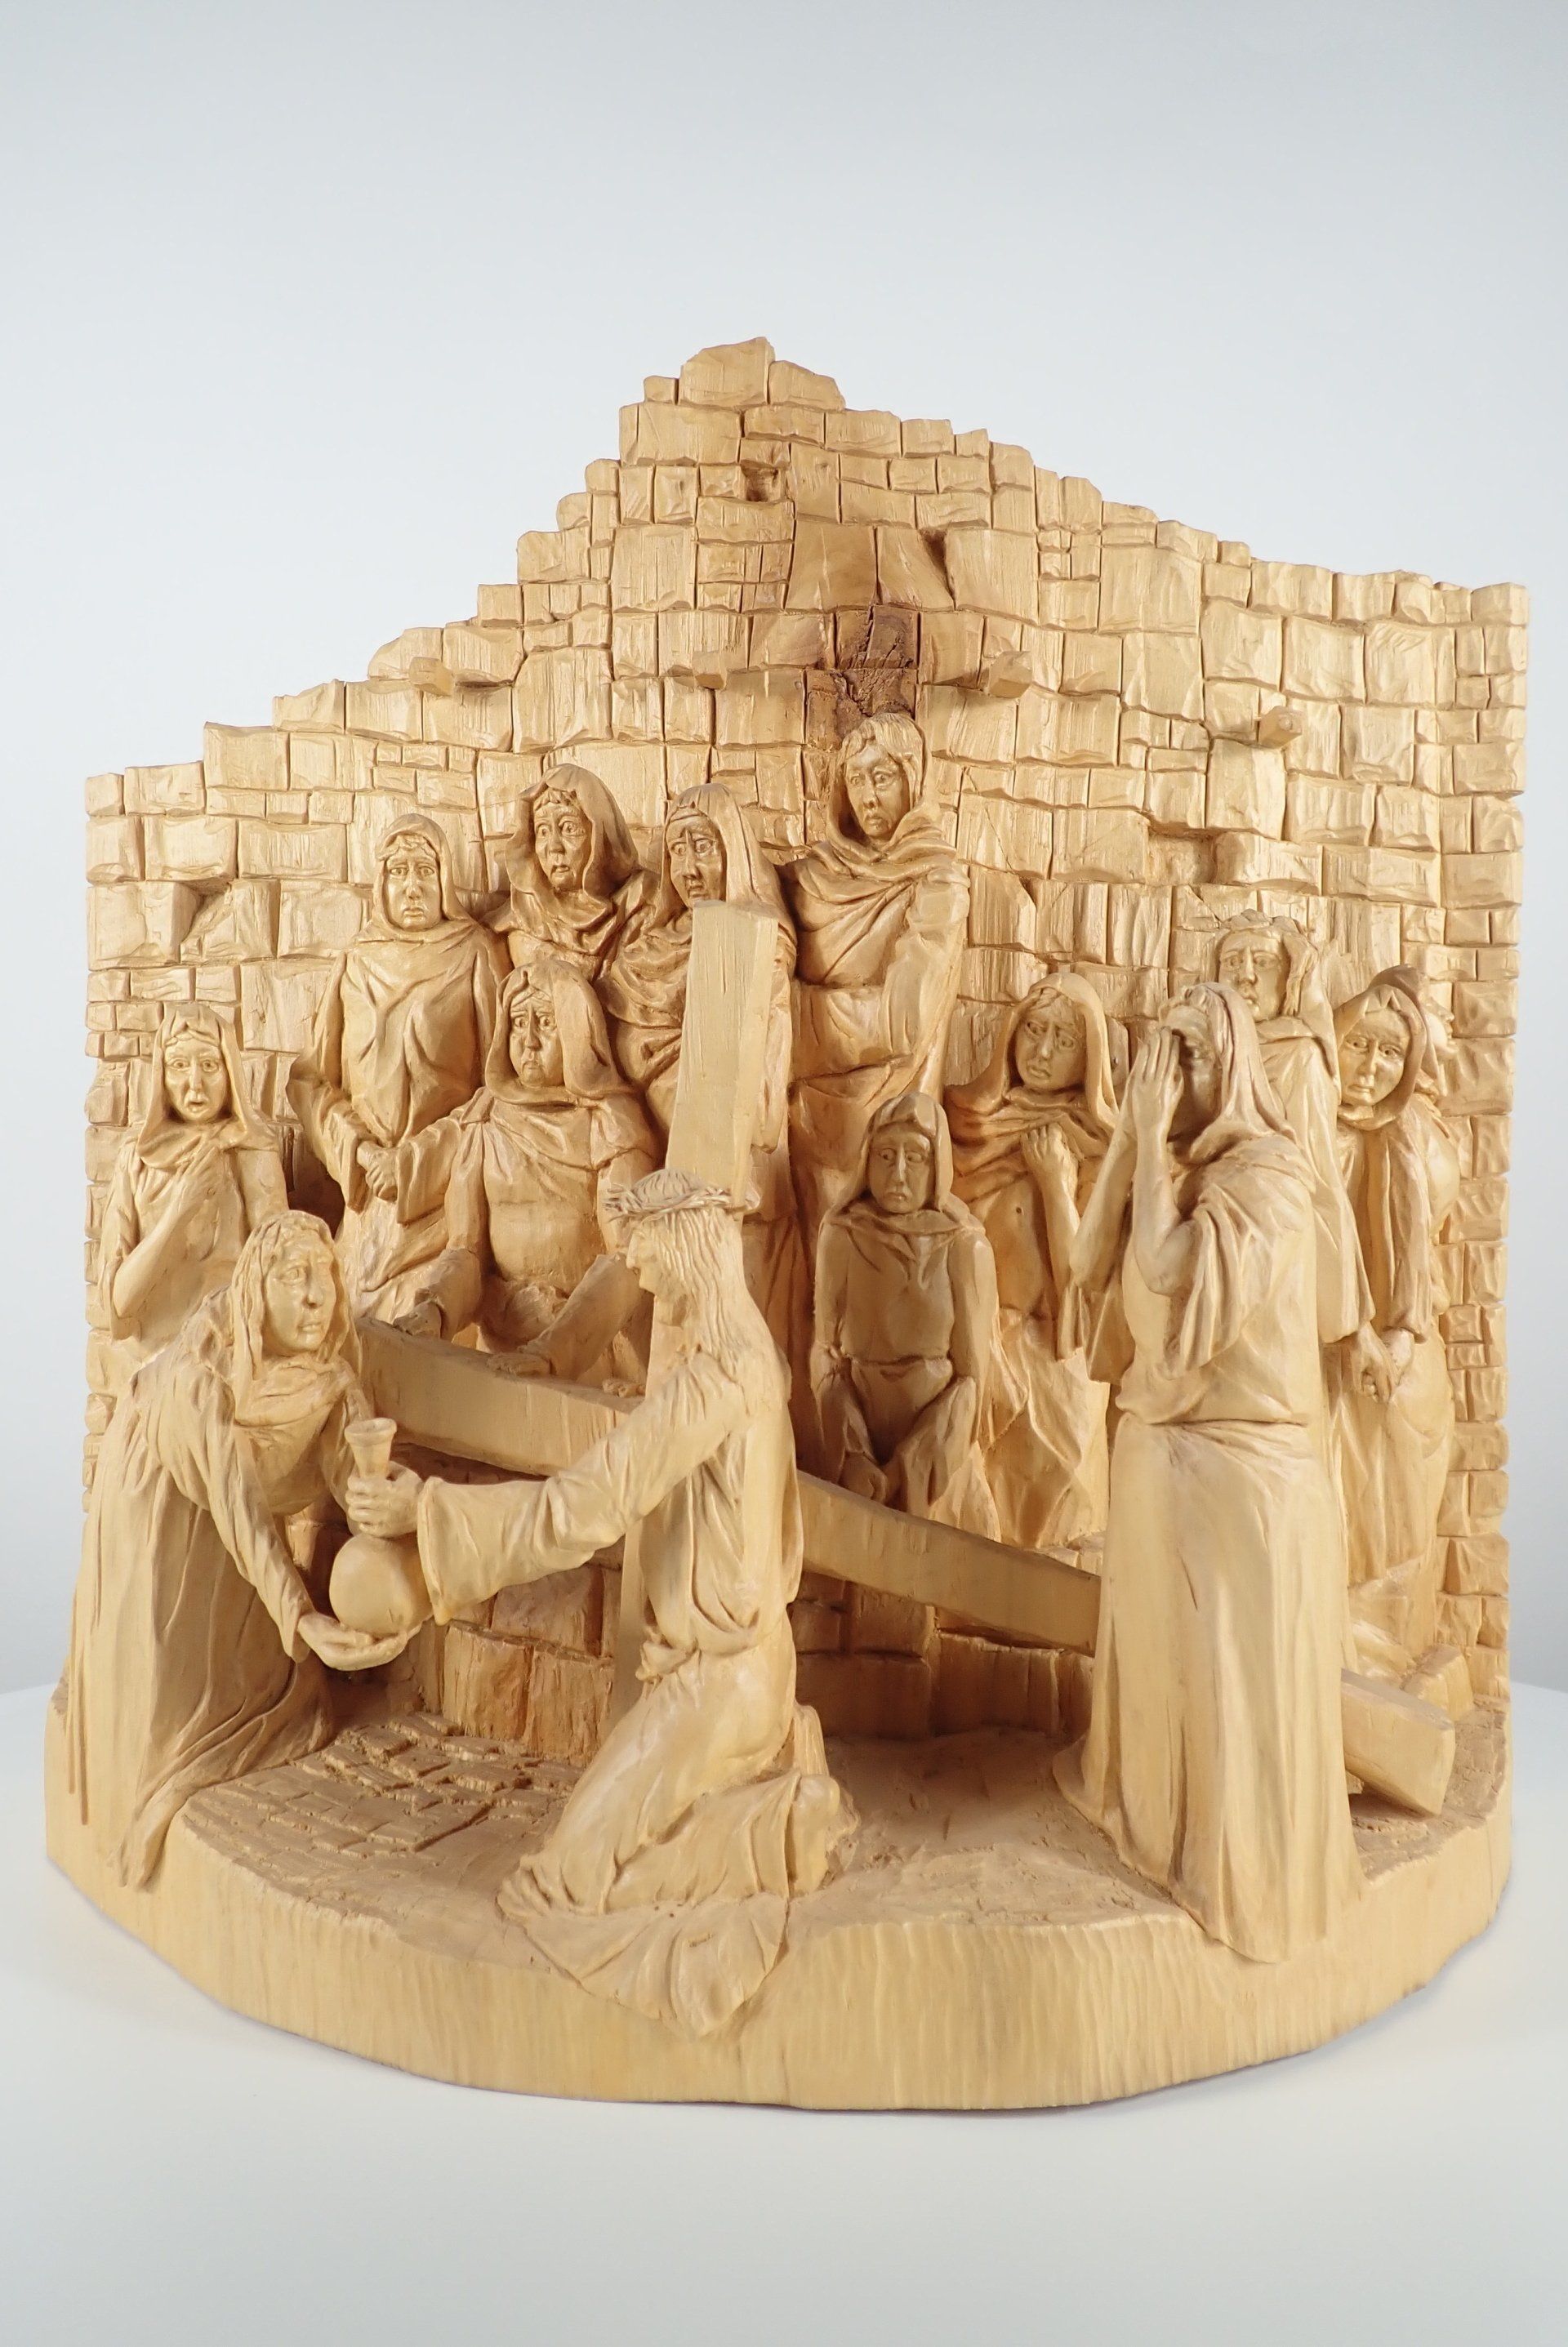 8. Kreuzwegstation, Jesus begenet den weinenden Frauen Skulptur von Holzbildhauer Ralph Hübschmann